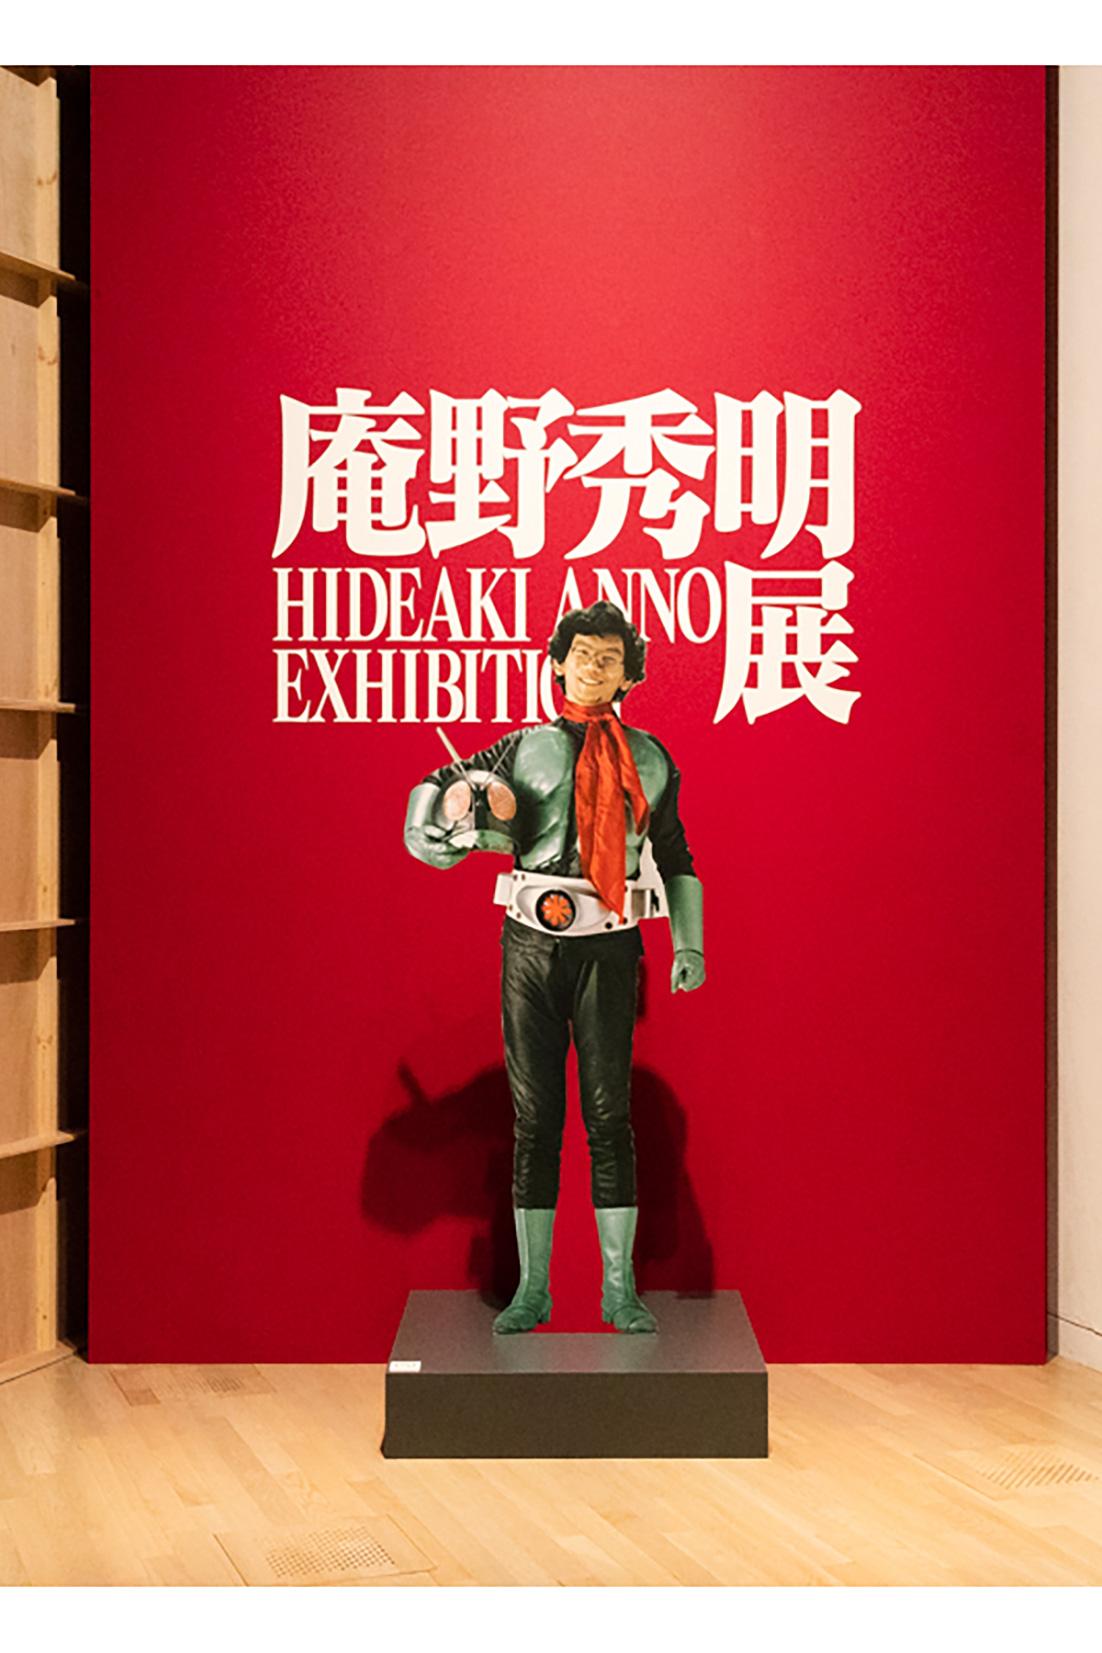 〈国立新美術館〉で開催中の『庵野秀明展』。入り口すぐの場所には、庵野自身が仮面ライダーの衣装を纏ったパネルが。